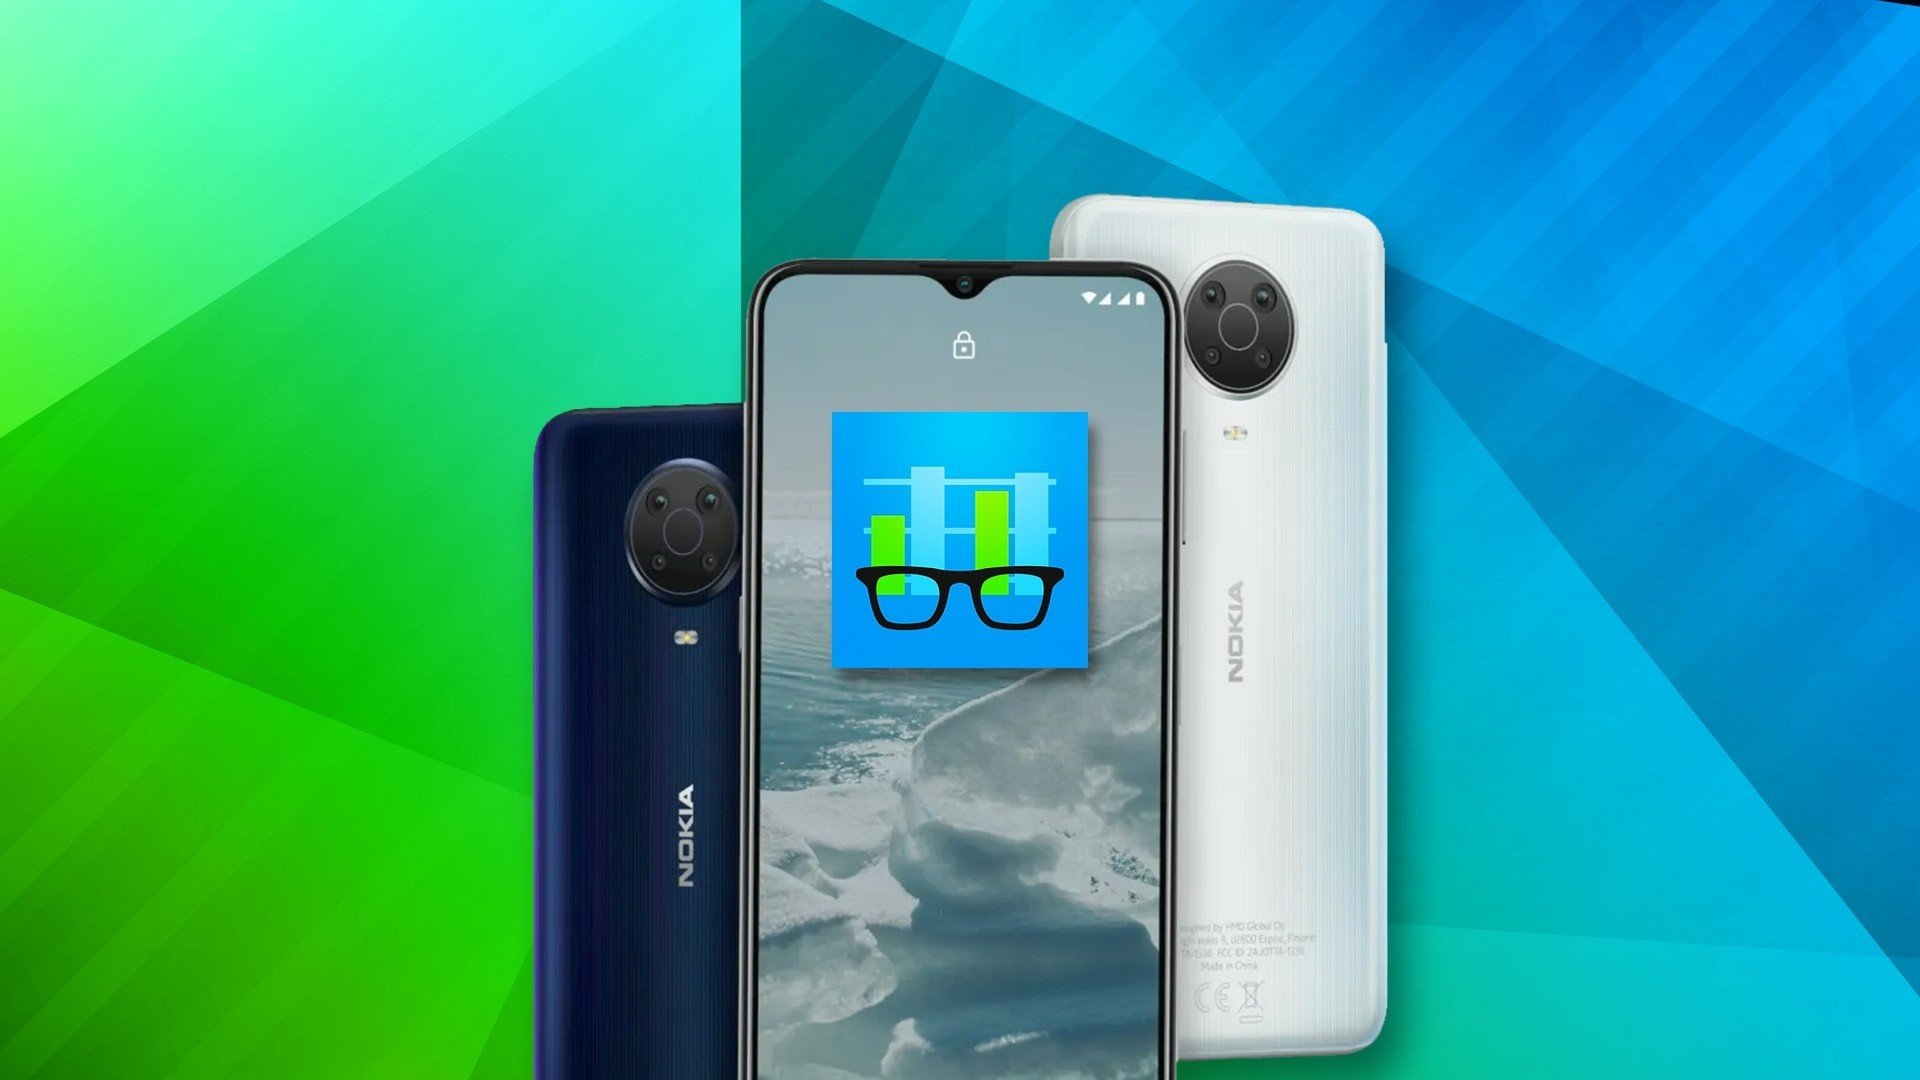 Nokia G11 e Nokia G21 tm imagens oficiais vazadas que revelam design; confira